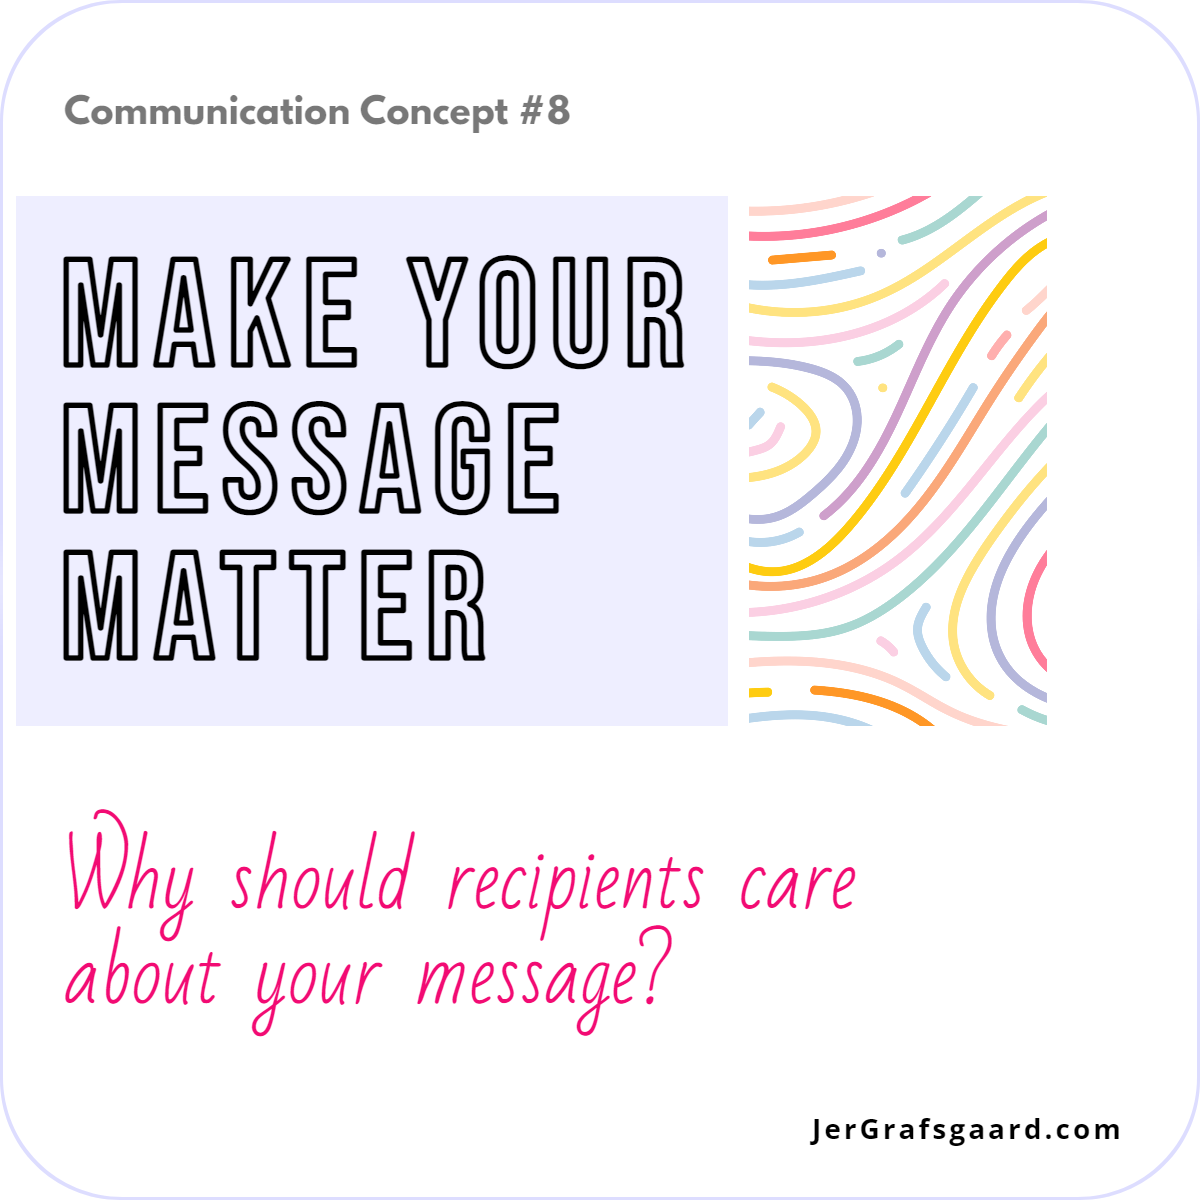 Communication Concept #8